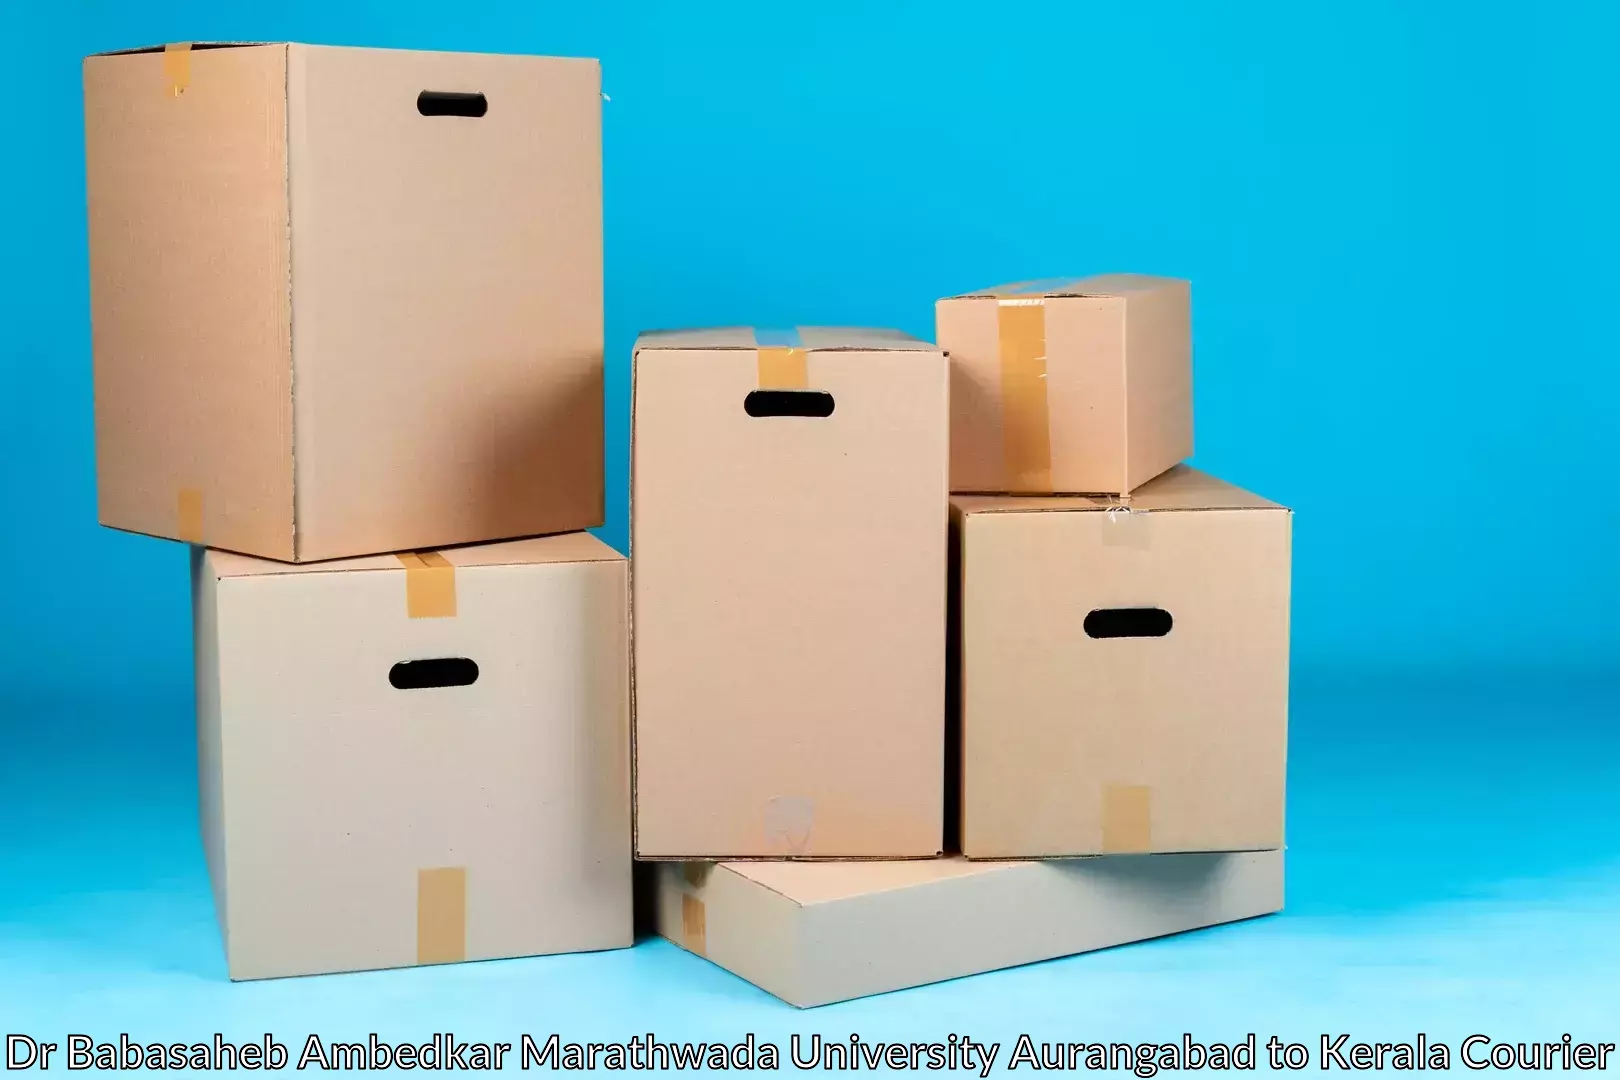 Efficient packing and moving Dr Babasaheb Ambedkar Marathwada University Aurangabad to Allepey